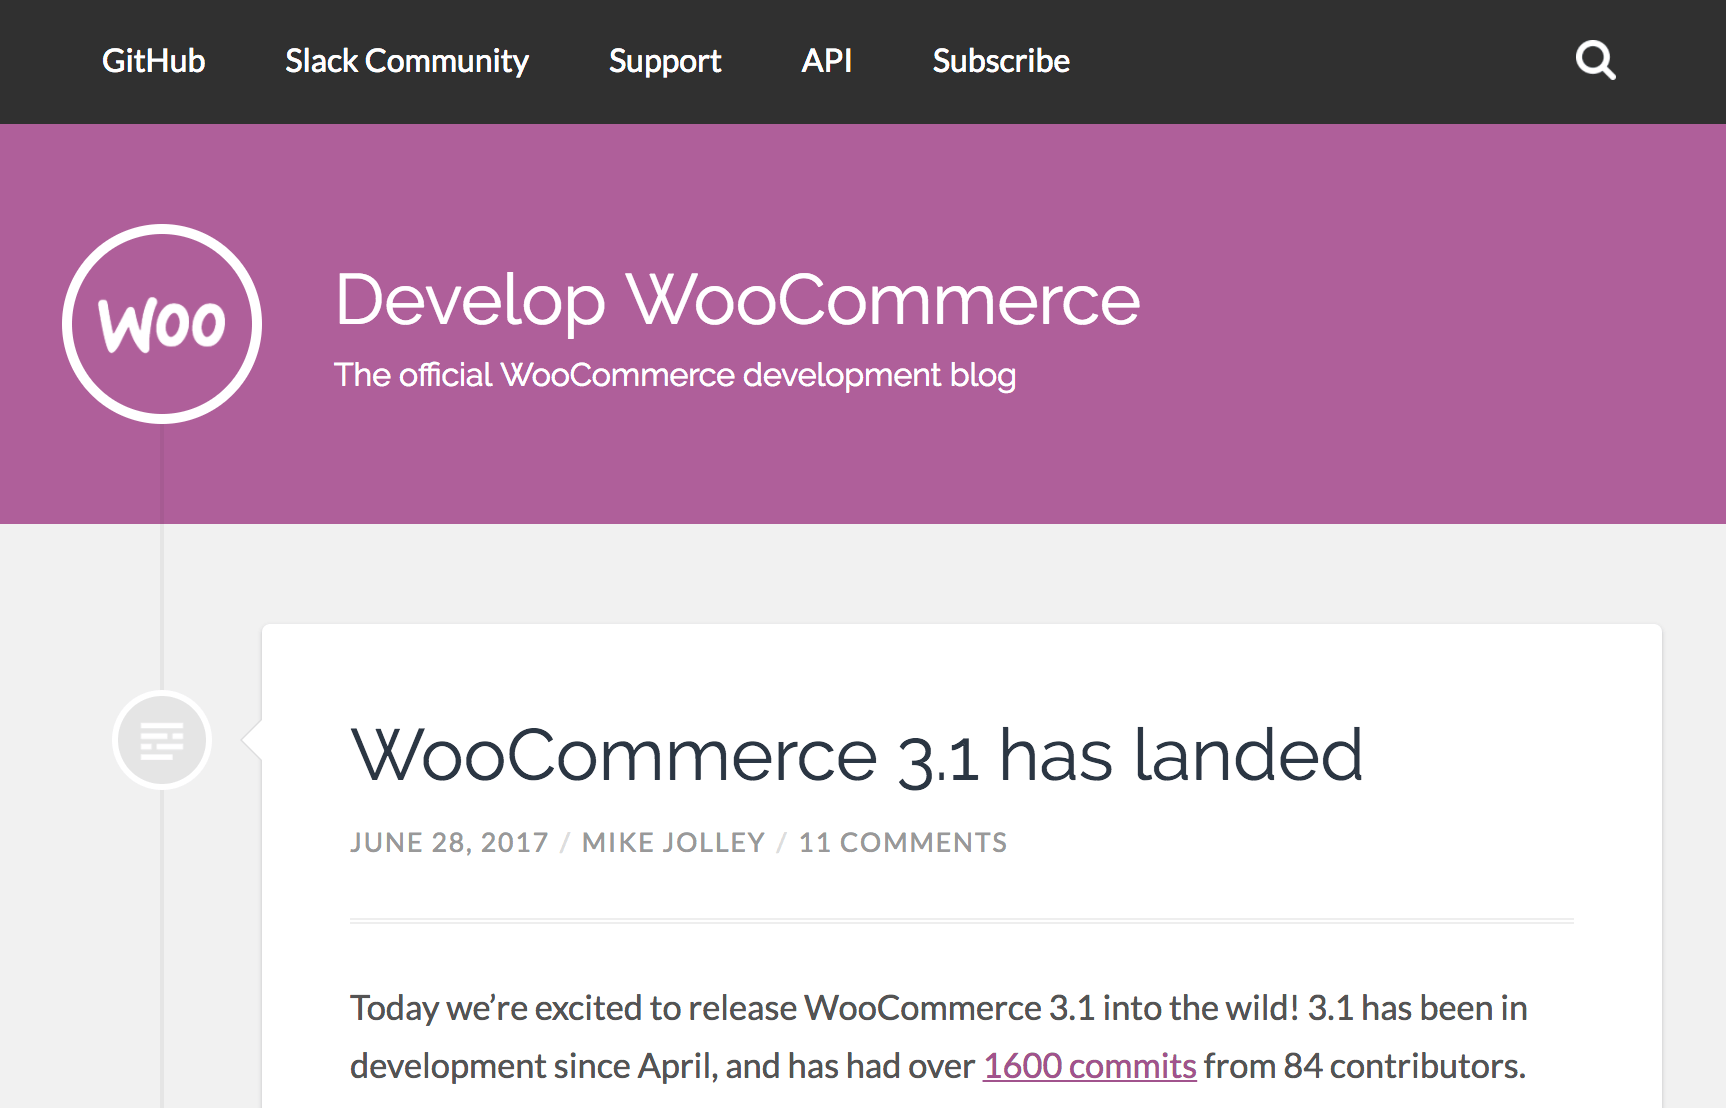 Develop WooCommerce blog